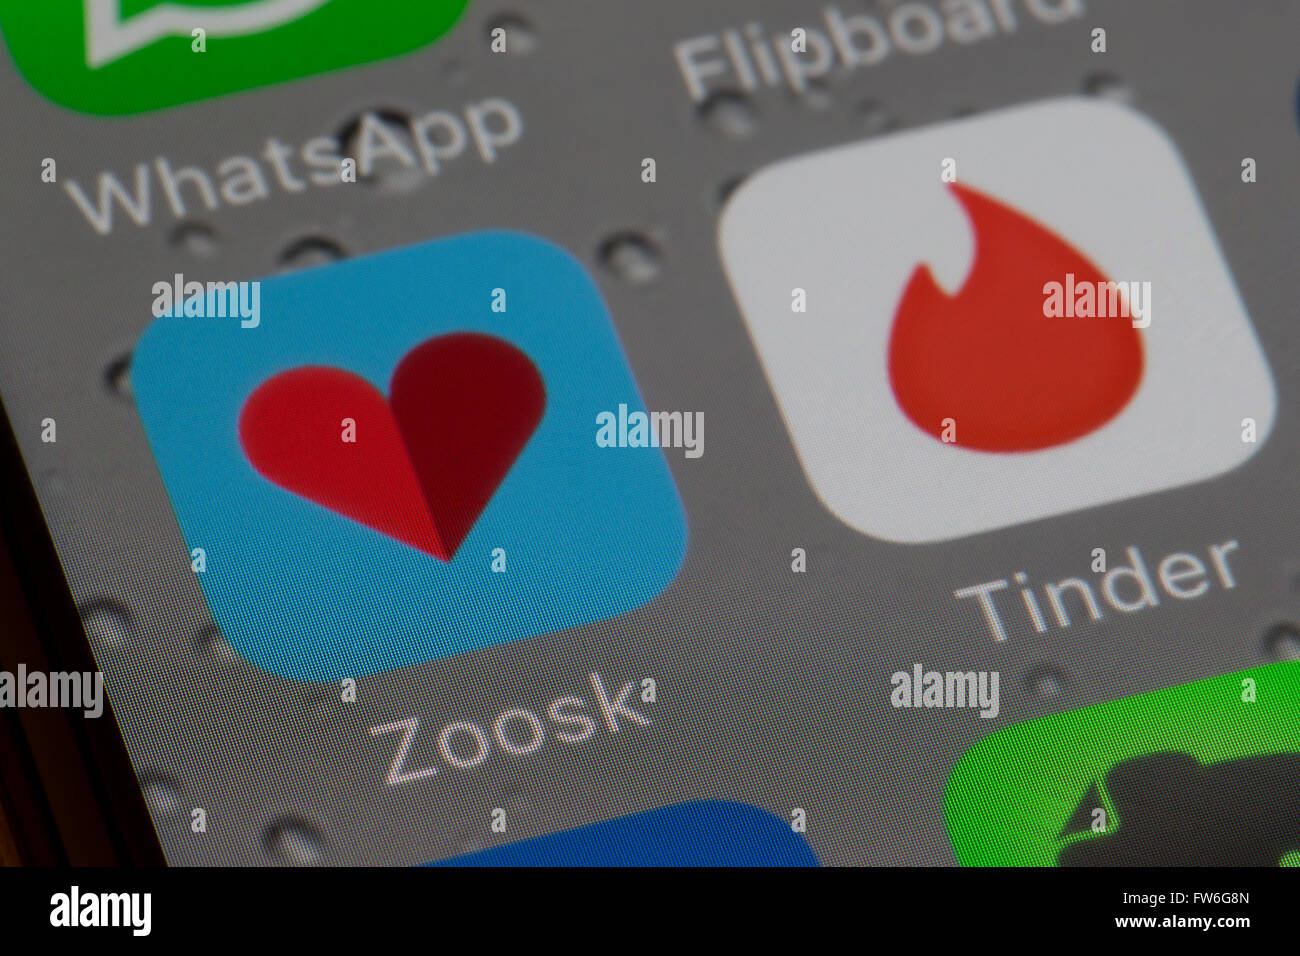 Zunder und Zoosk Internet-dating-apps. Stockfoto